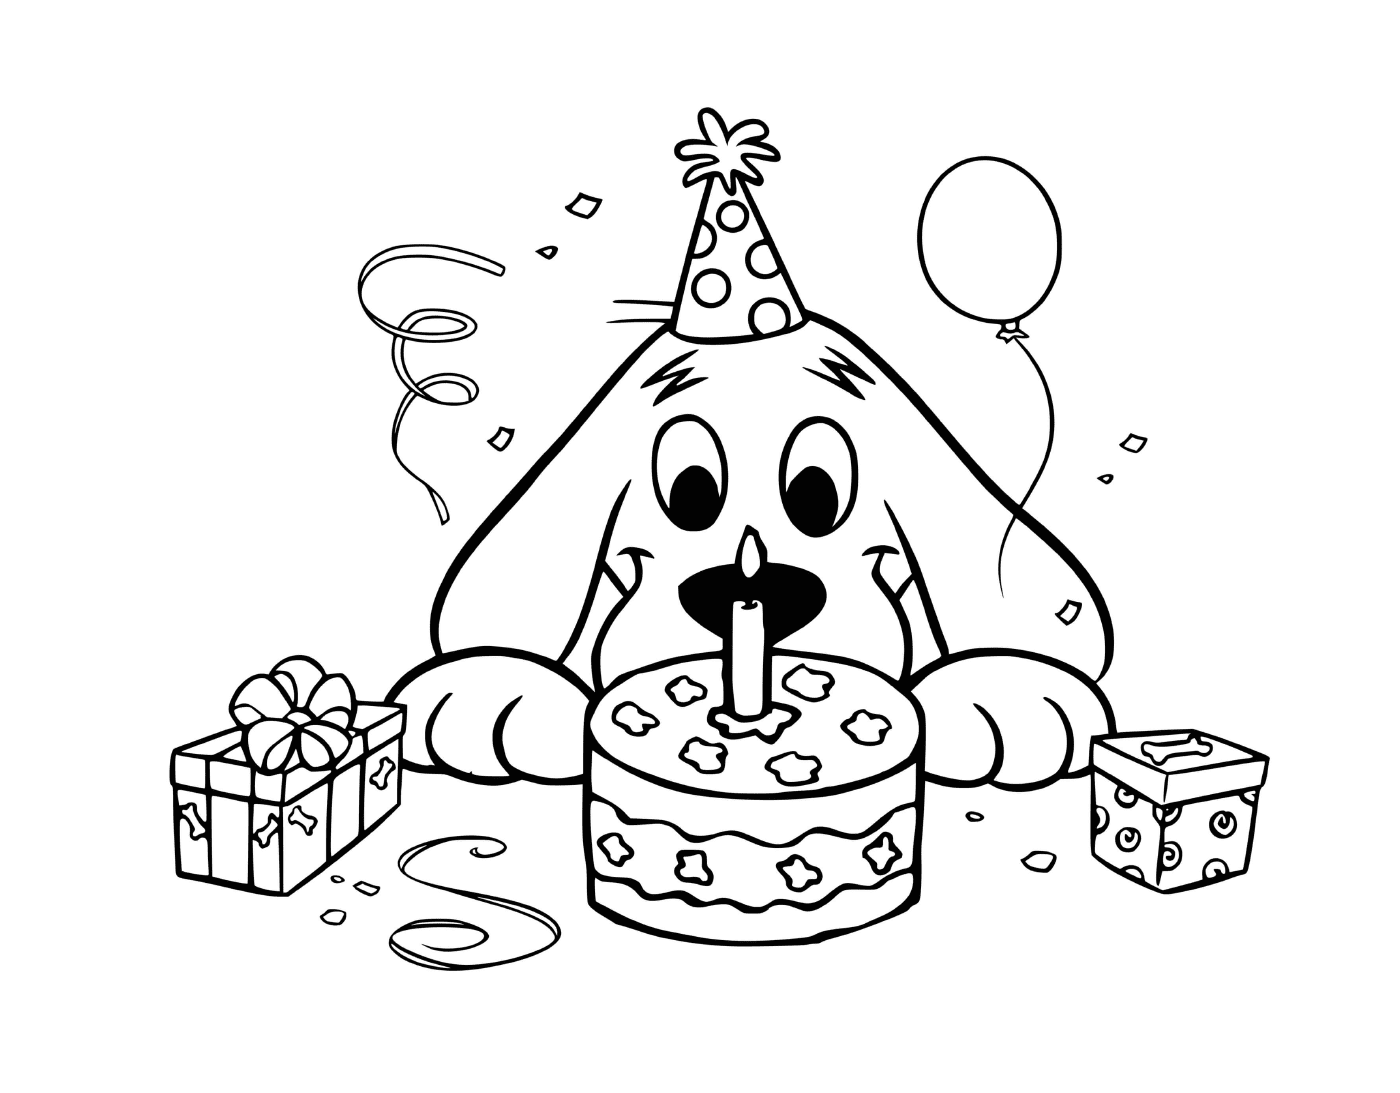  Клиффорд, с днем рождения, с тортом, шляпой, подарком, праздником 